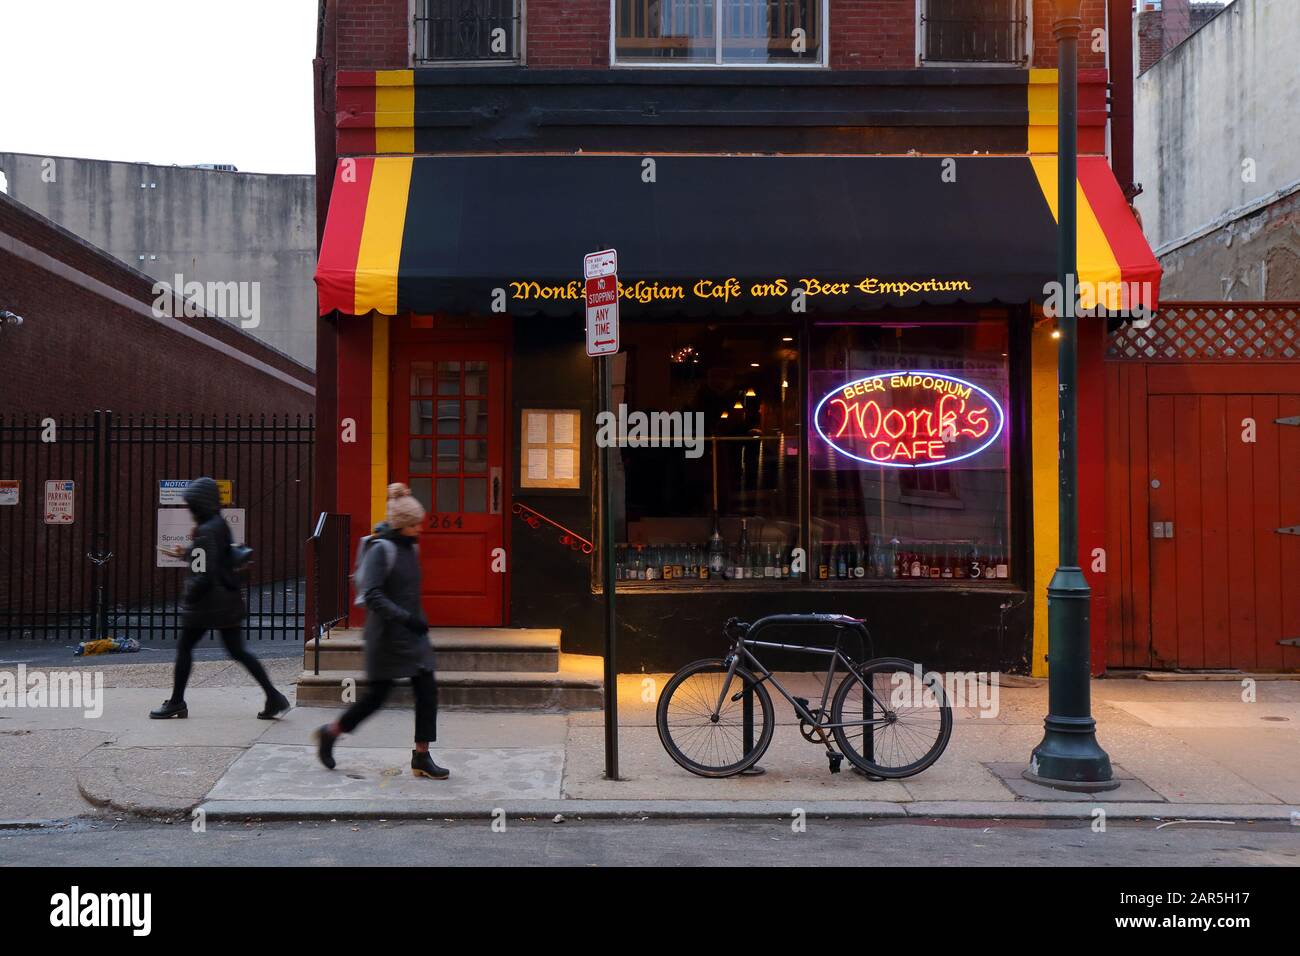 Monk's Cafe, 264 S 16ème Street, Philadelphie, PA. Façade de la brasserie belge avec une carte de bières très complète sur la place Rittenhouse. Banque D'Images